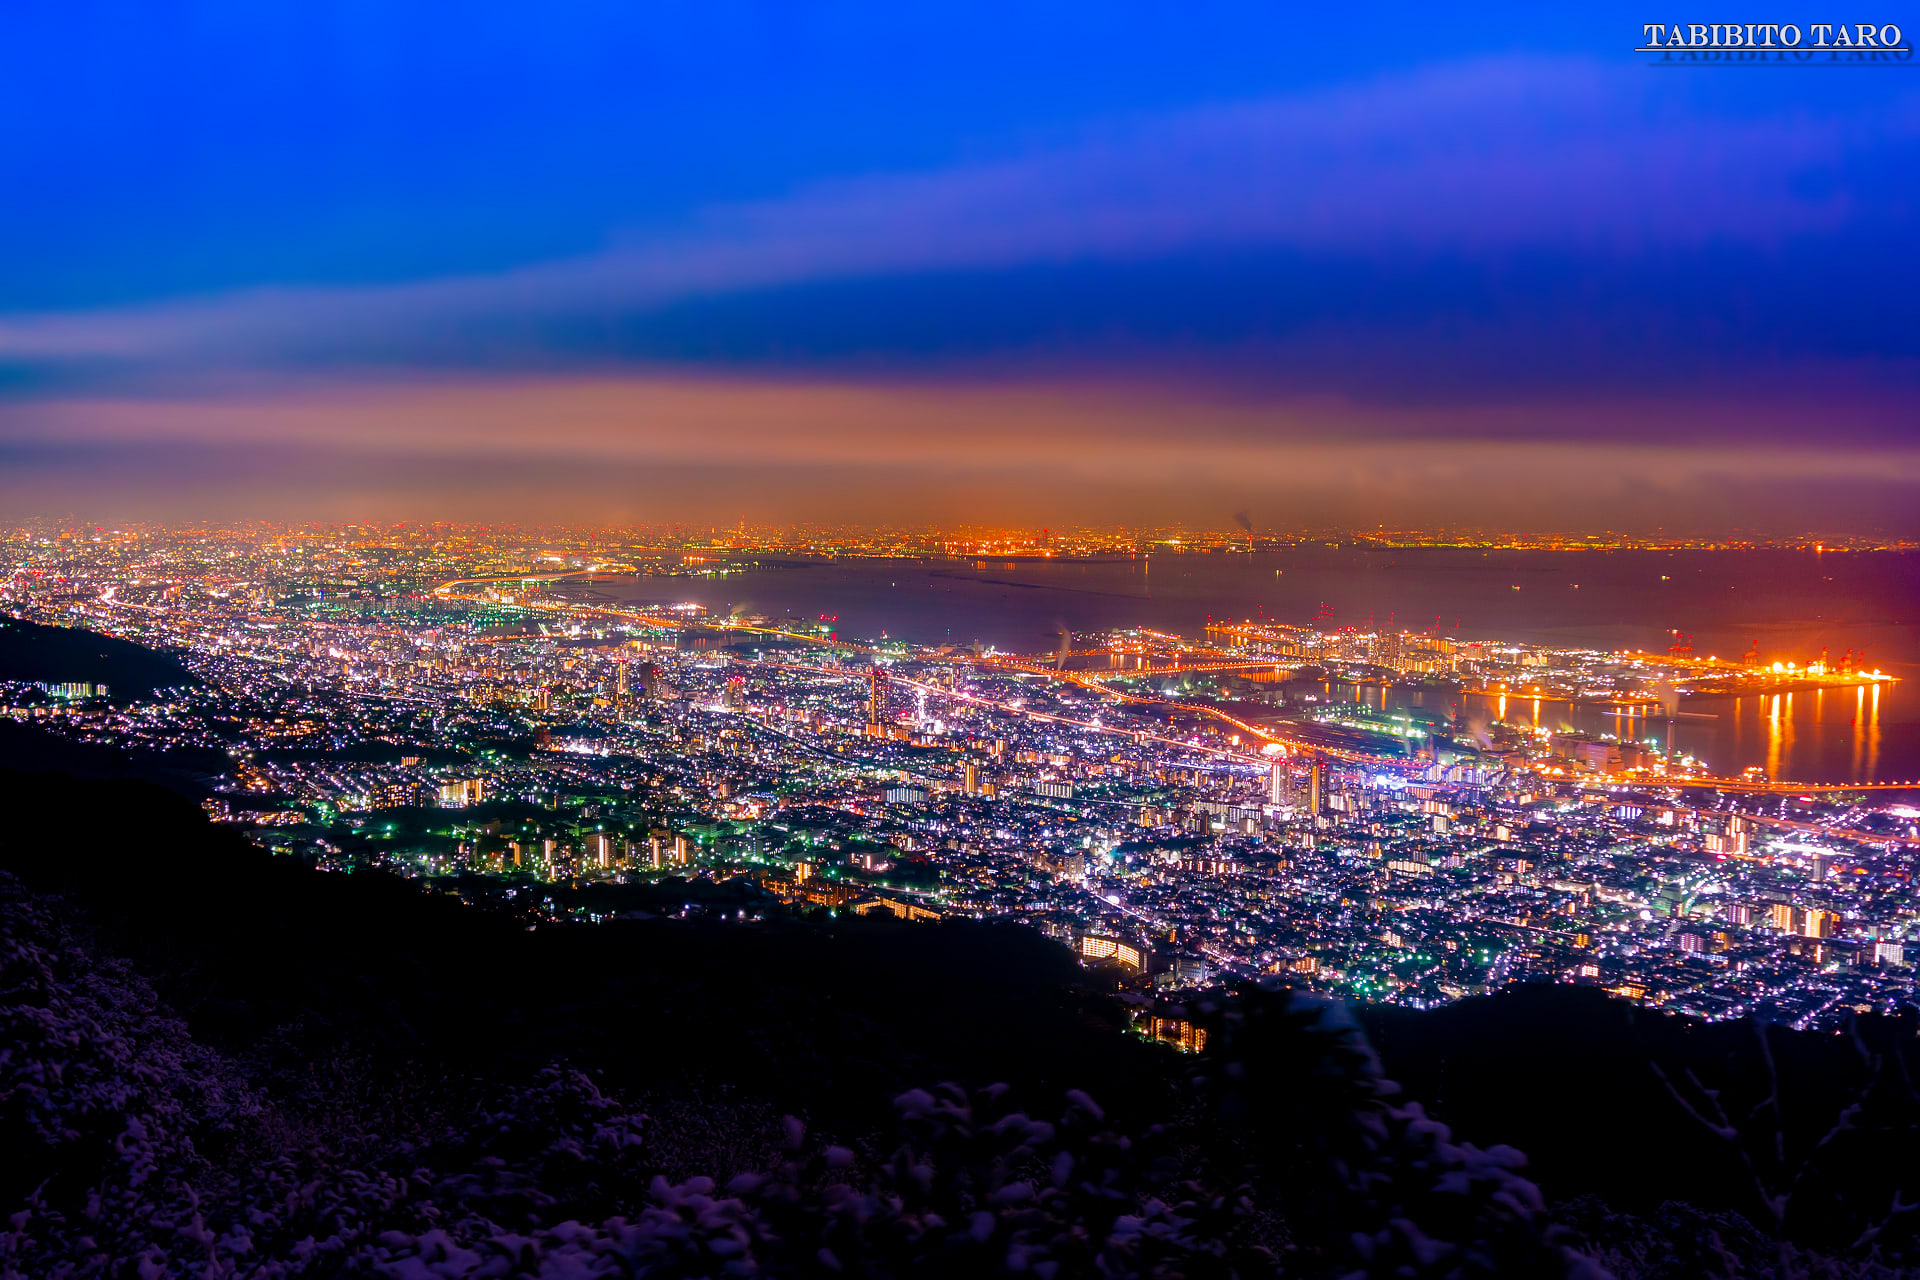 夜景 山からの展望 Vol 1 神戸市 摩耶山 旅人太郎の写真館